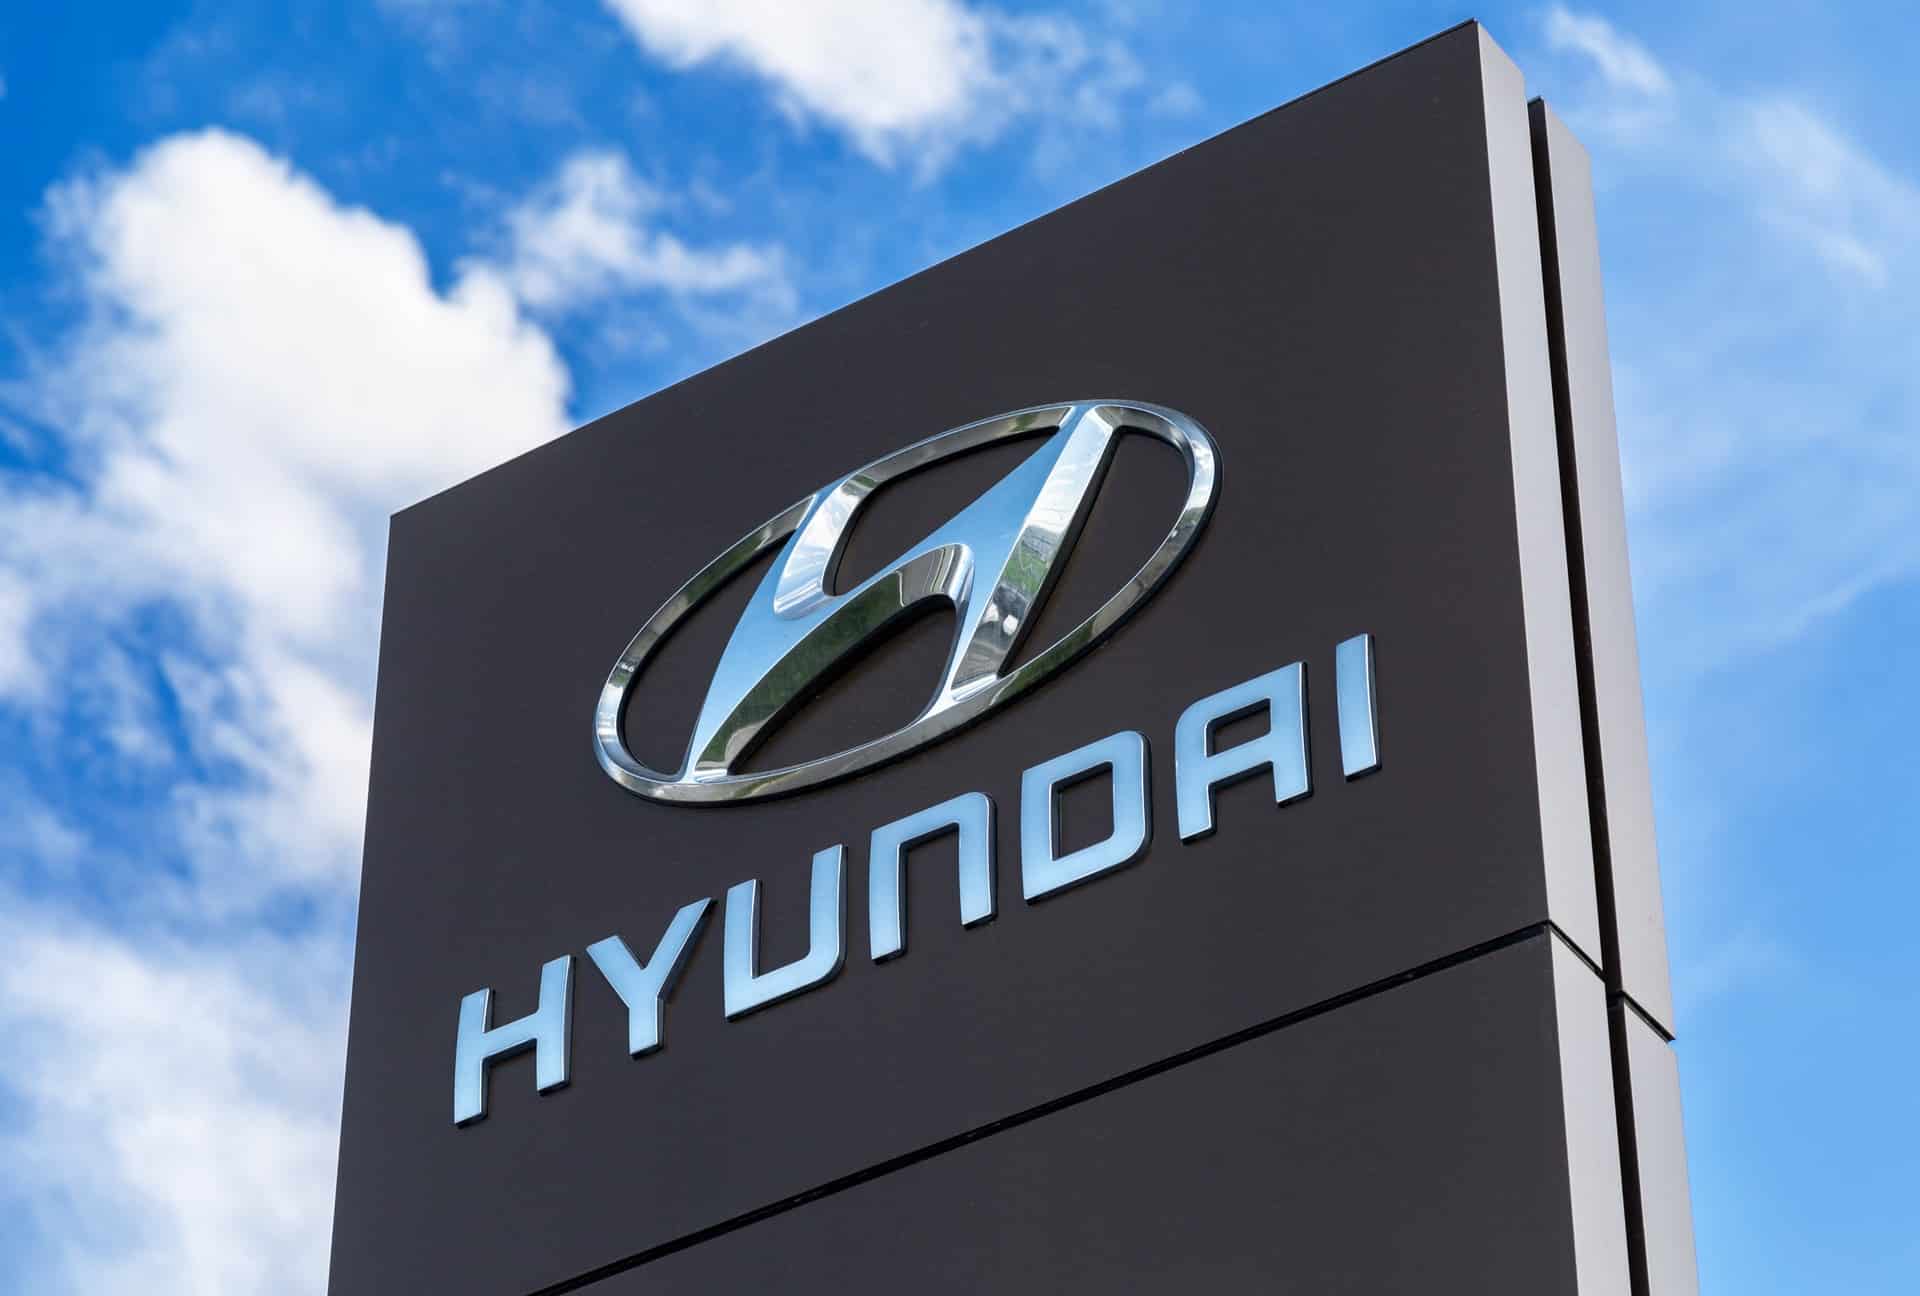 Pièces détachées Hyundai pas cher : quelles solutions ?